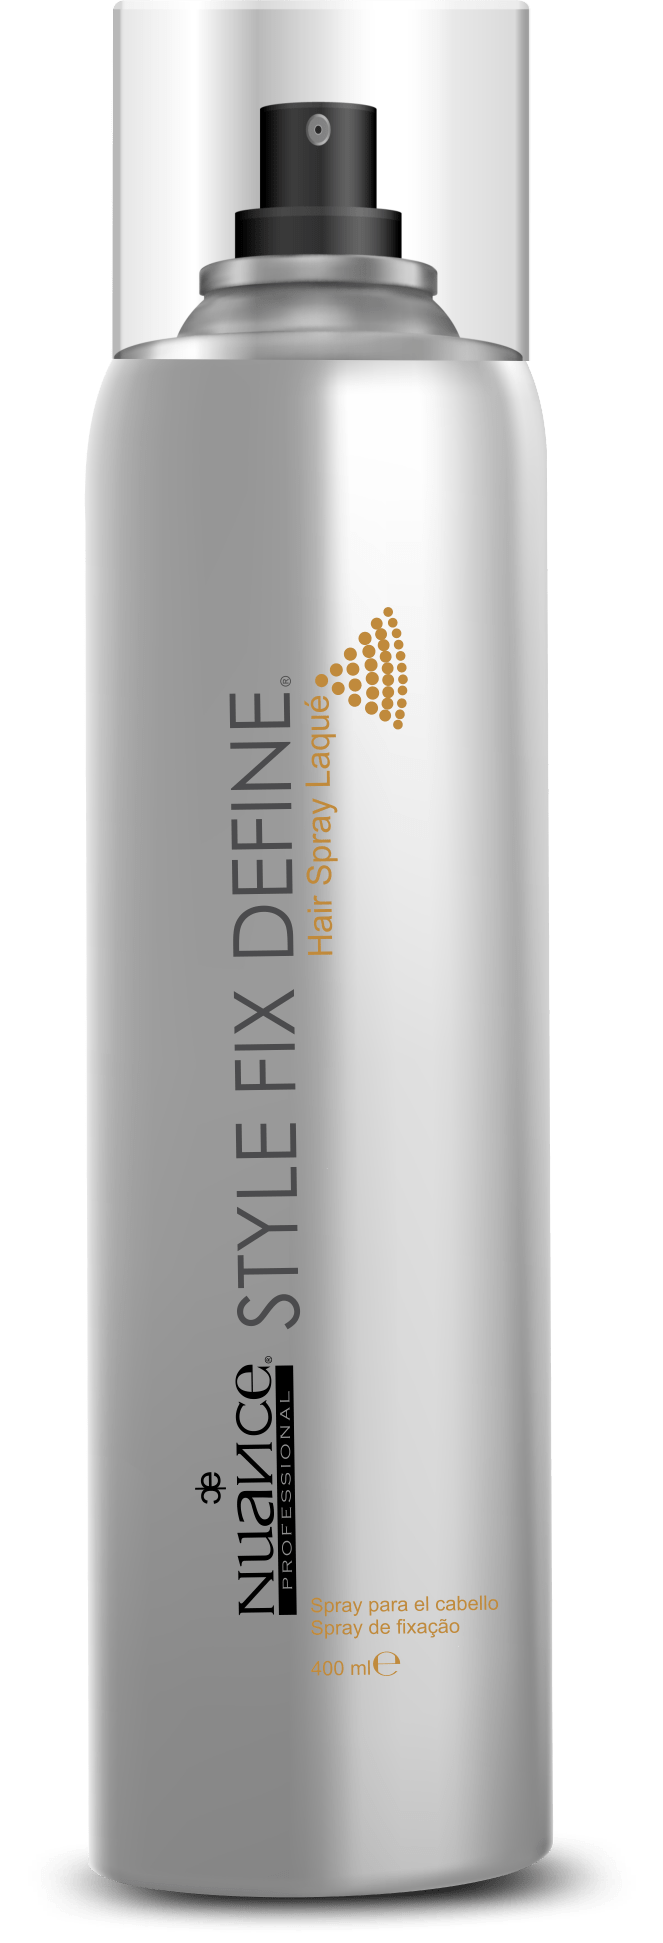 STYLE FIX DEFINE - Spray de fixação - 400ml